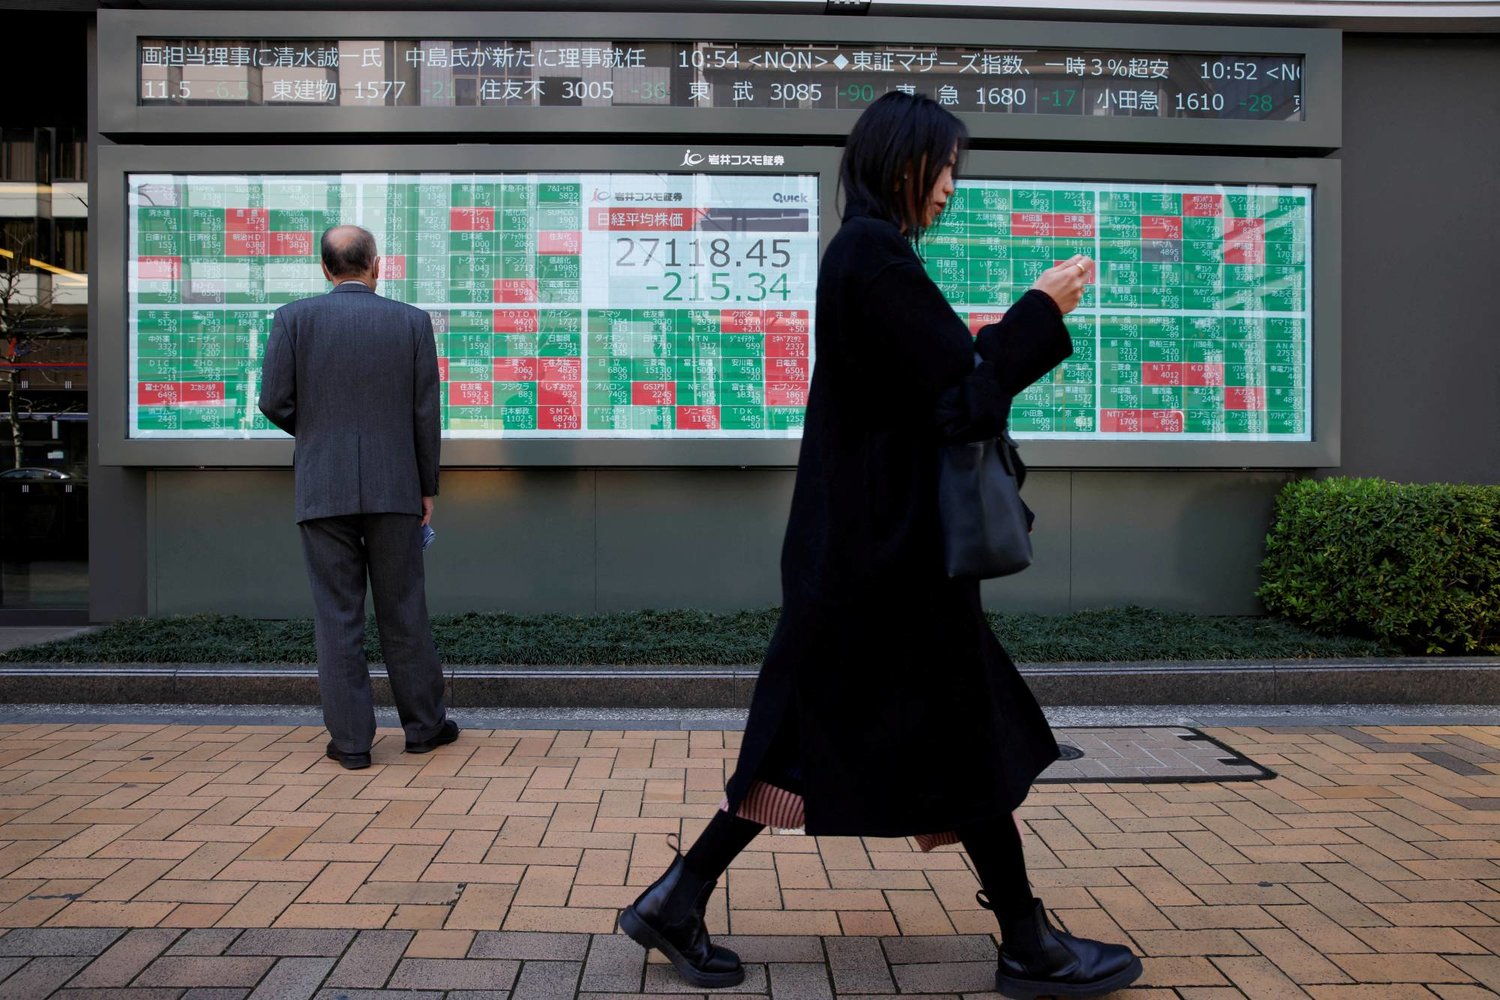 أشخاص أمام لوحة إلكترونية تعرض أداء مؤشر نيكي وأسعار الأسهم في طوكيو، اليابان - رويترز 